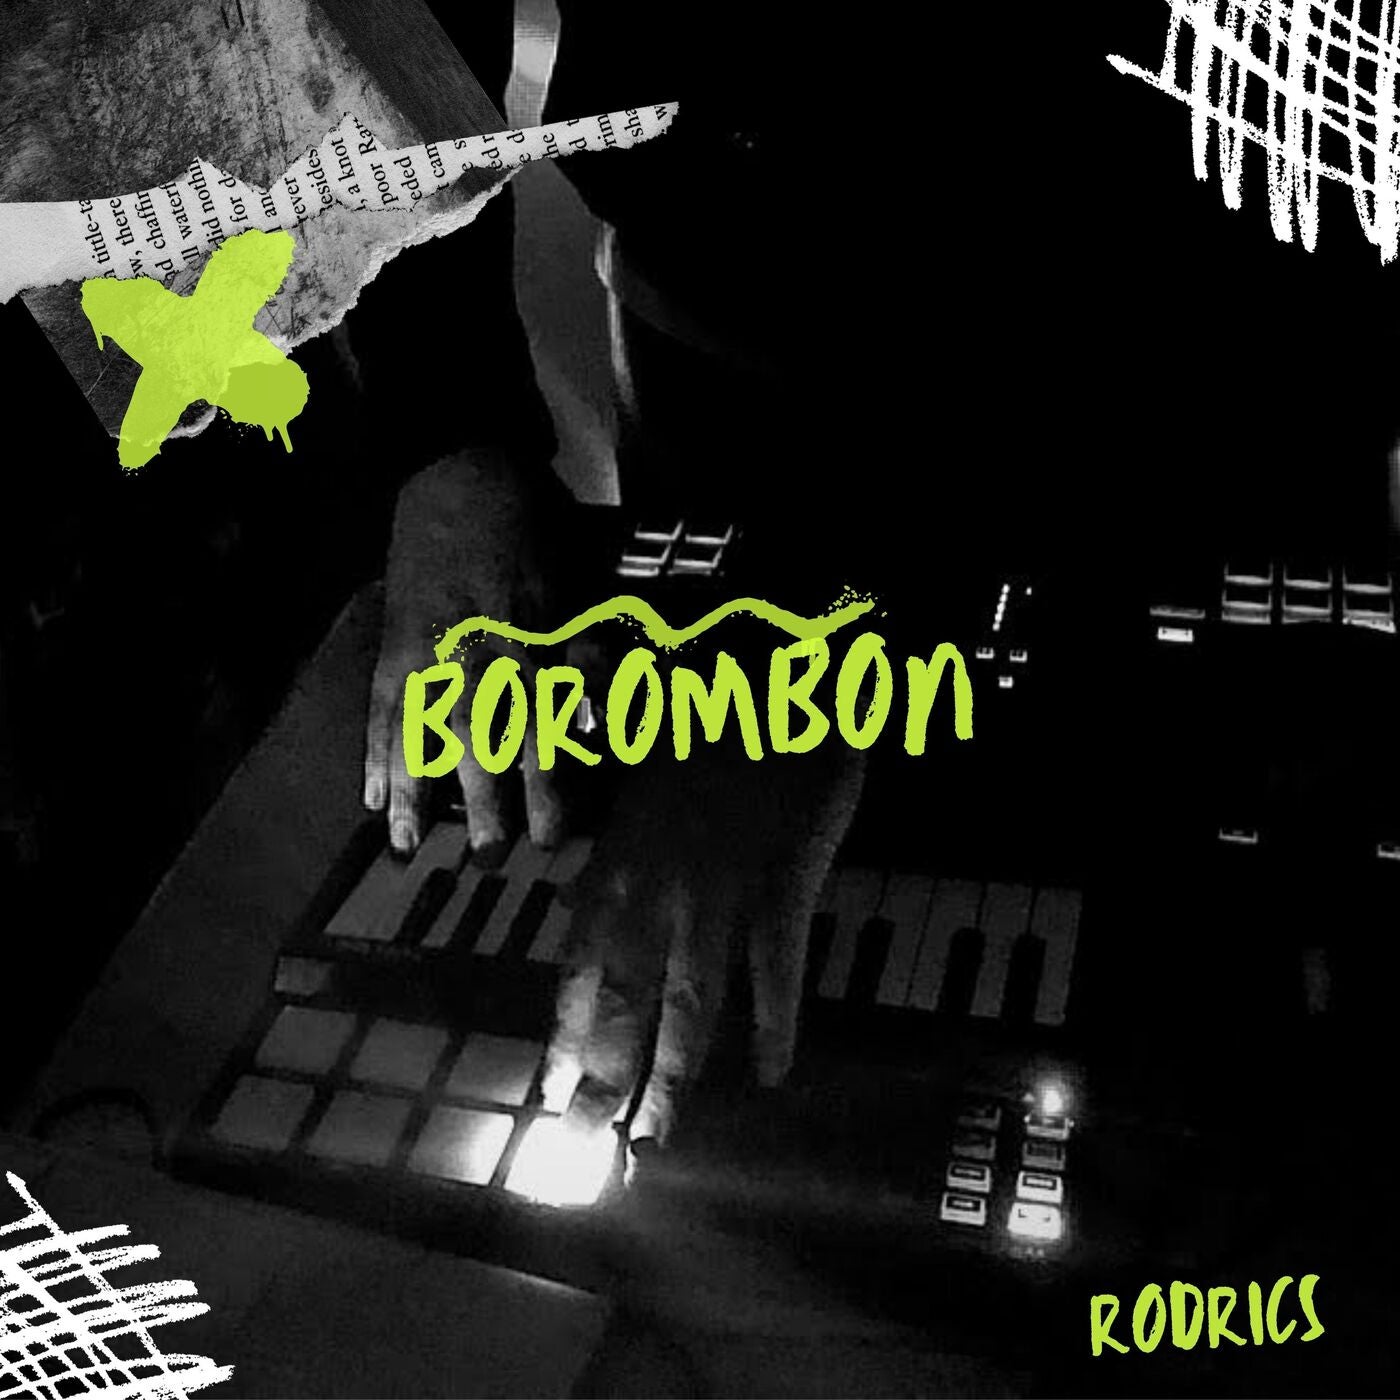 Borombon